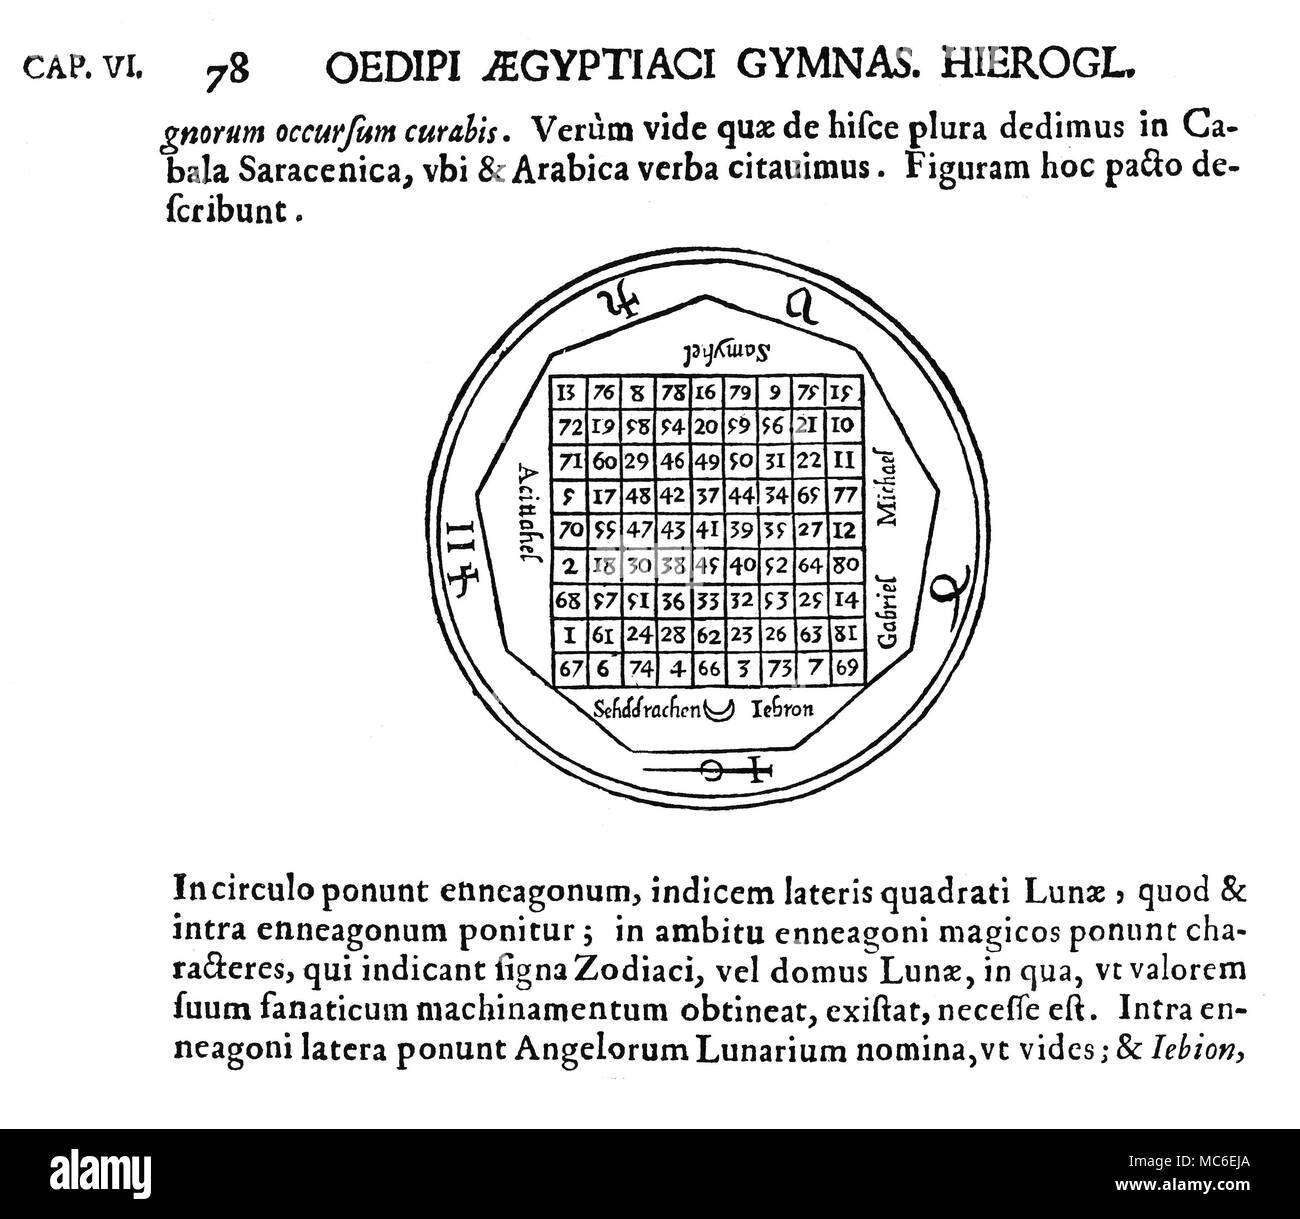 Magische Symbole - magische Quadrate - Mond die Tabula Lunae, oder magische Quadrat des Mondes, auf einem 9x9-Quadrat, die einzelne lineare Addition von 369, in eine beliebige Richtung. Der Platz wird von verschiedenen Namen und Siegel von Engeln und Dämonen auf den Mond verwandte umgeben. Von Athanasius Kircher, Oedipus Aegyptiacus, 1652-4. Die Struktur und einige der Engel Lore, wird von den magischen Quadraten veröffentlicht von Cornelius Agrippa abgeleitet. Stockfoto